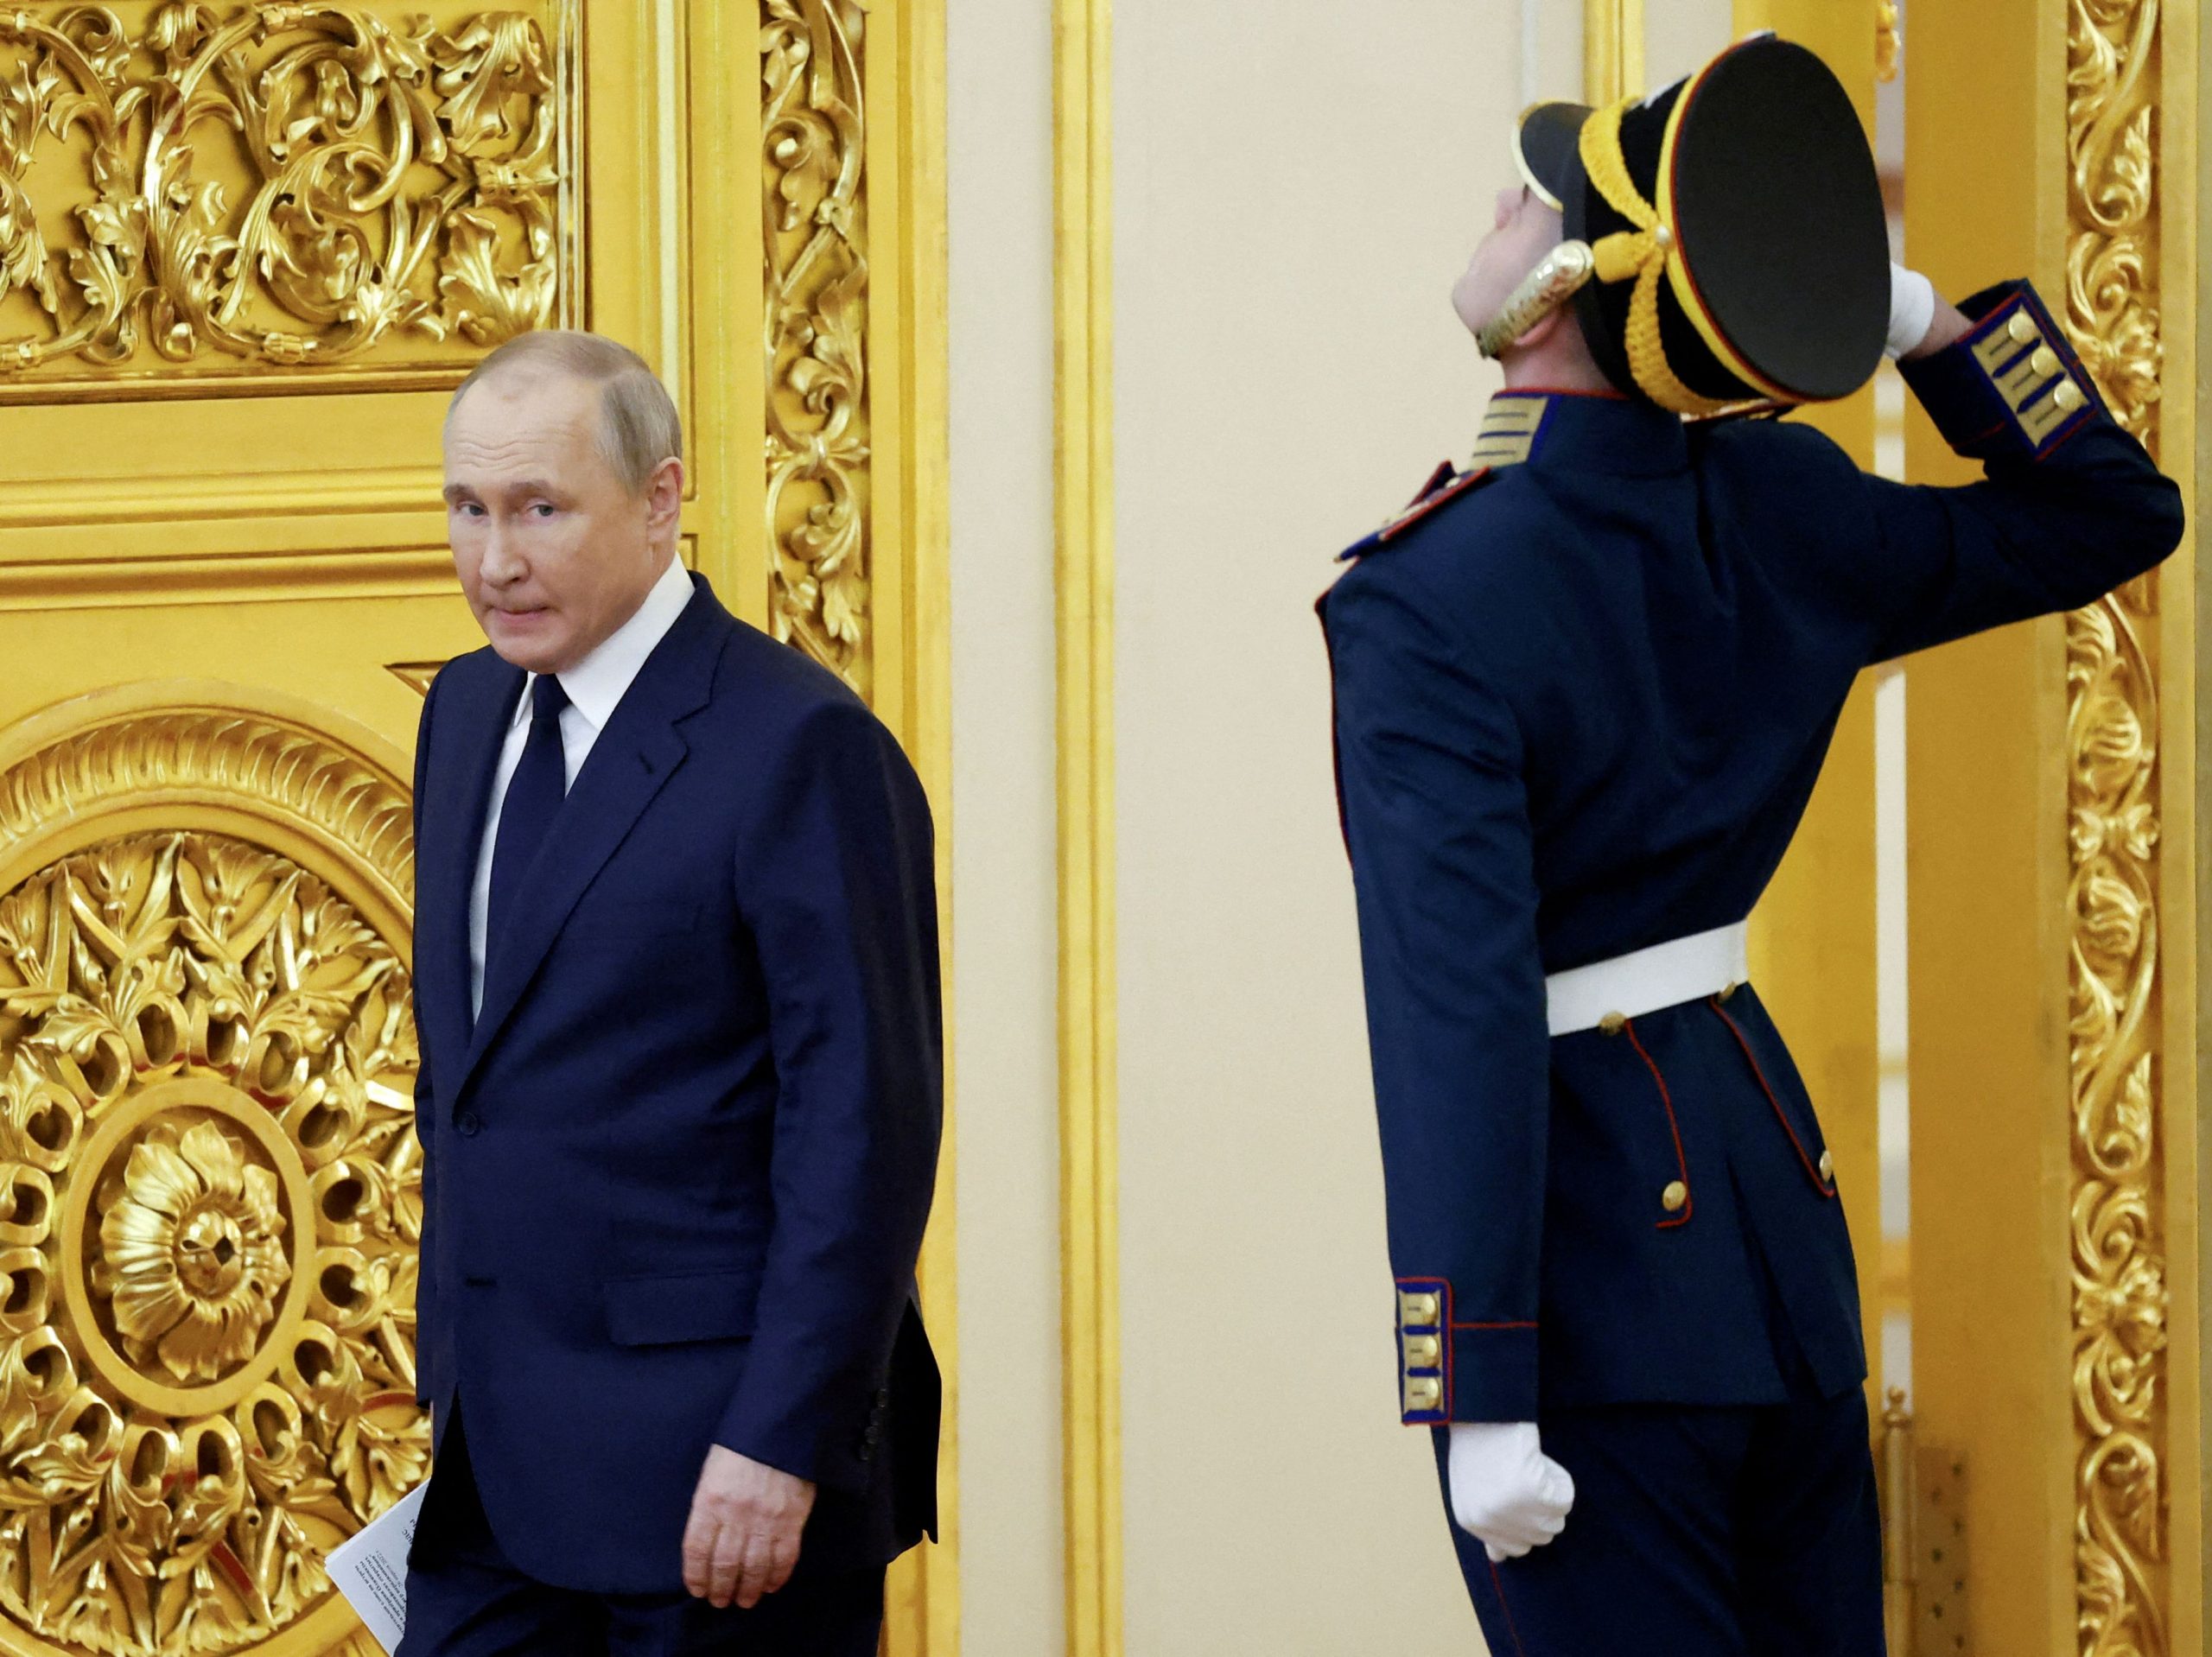 Ο Πούτιν προτείνει τον «πολυπολικό κόσμο» στον Παγκόσμιο Νότο